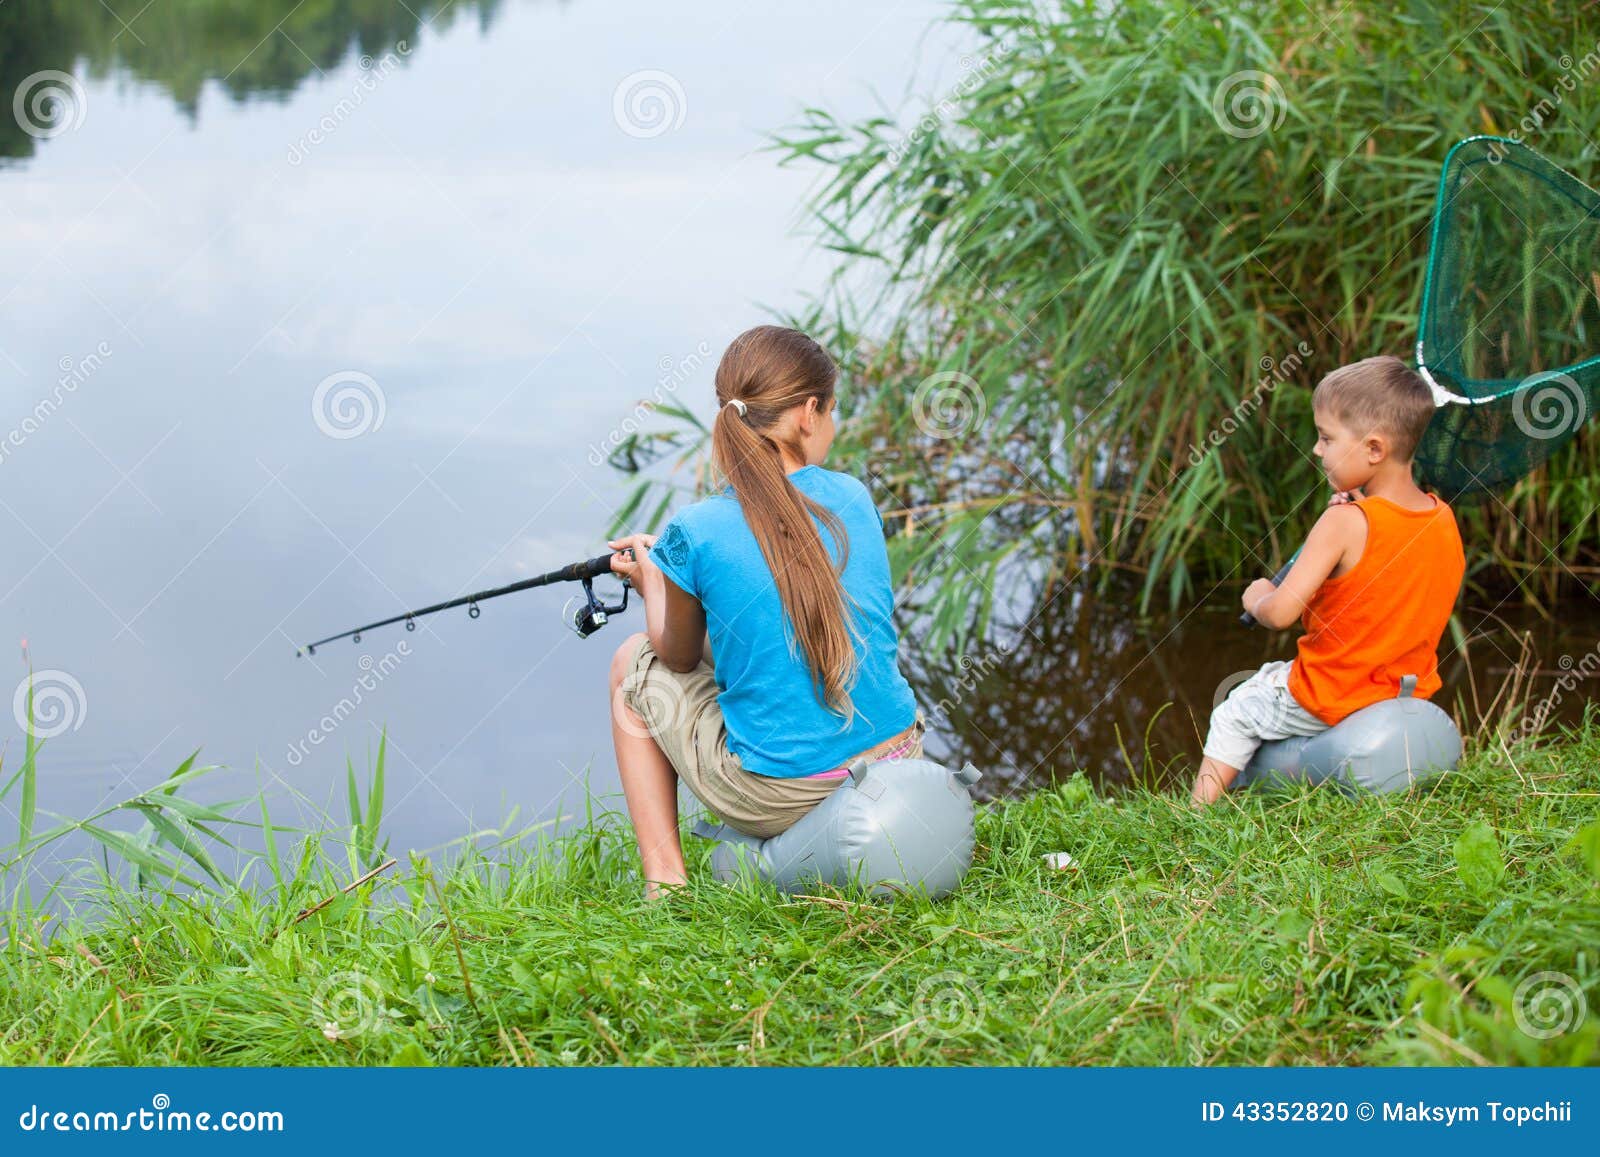 Братья ловят рыбу. Р.сестра рыбалка. Фотосессия на речке летом ребенок рыбачит. Река сестра рыбалка. Фотосессия на тему рыбалка с сестрой.